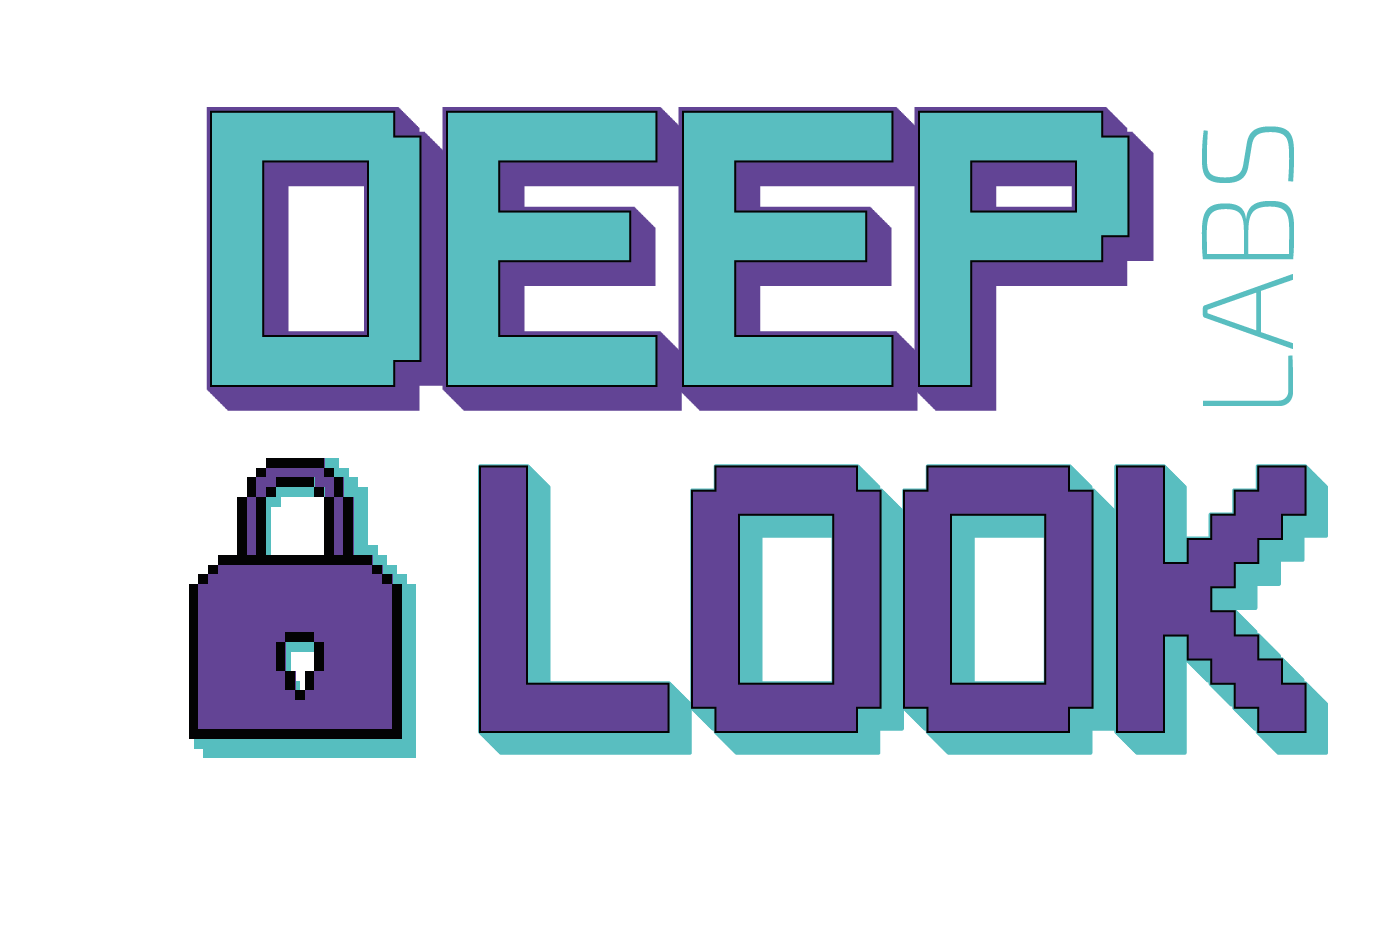 Deeplooklabs